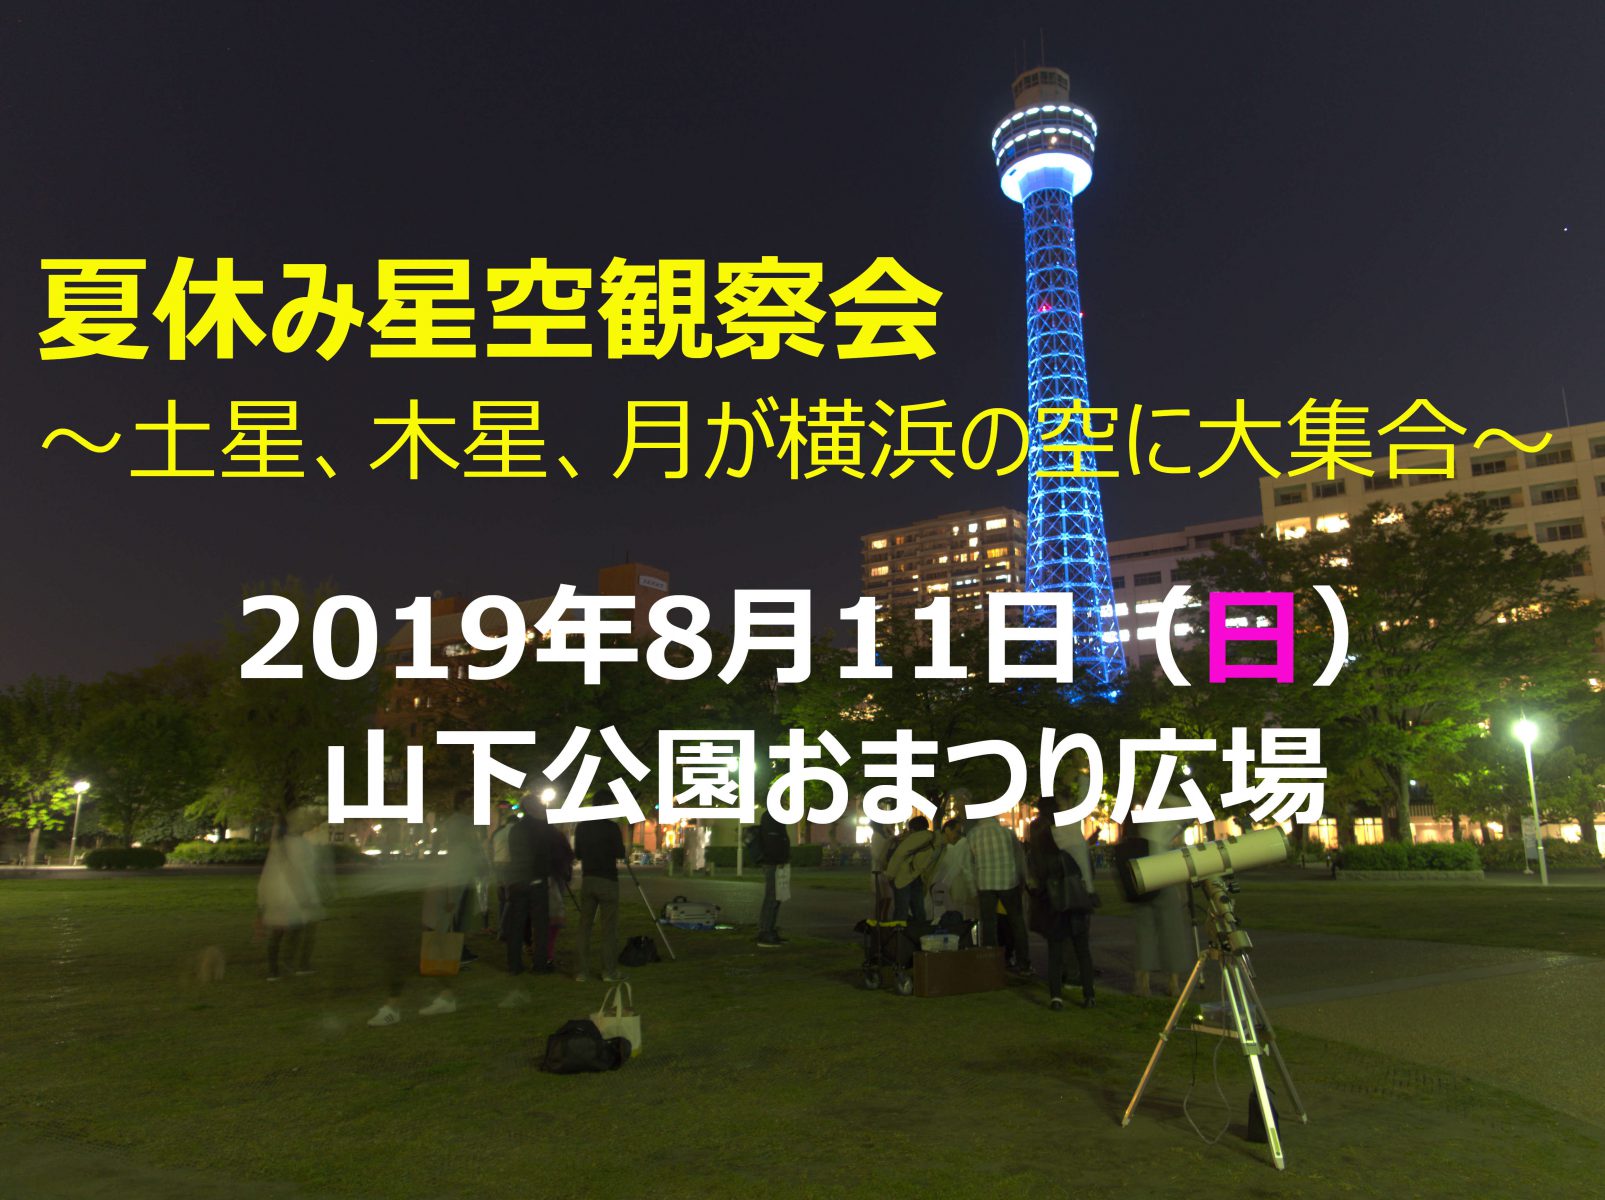 夏休み星空観察会 土星 木星 月が横浜の空に大集合 を開催します 星 クラブ横浜